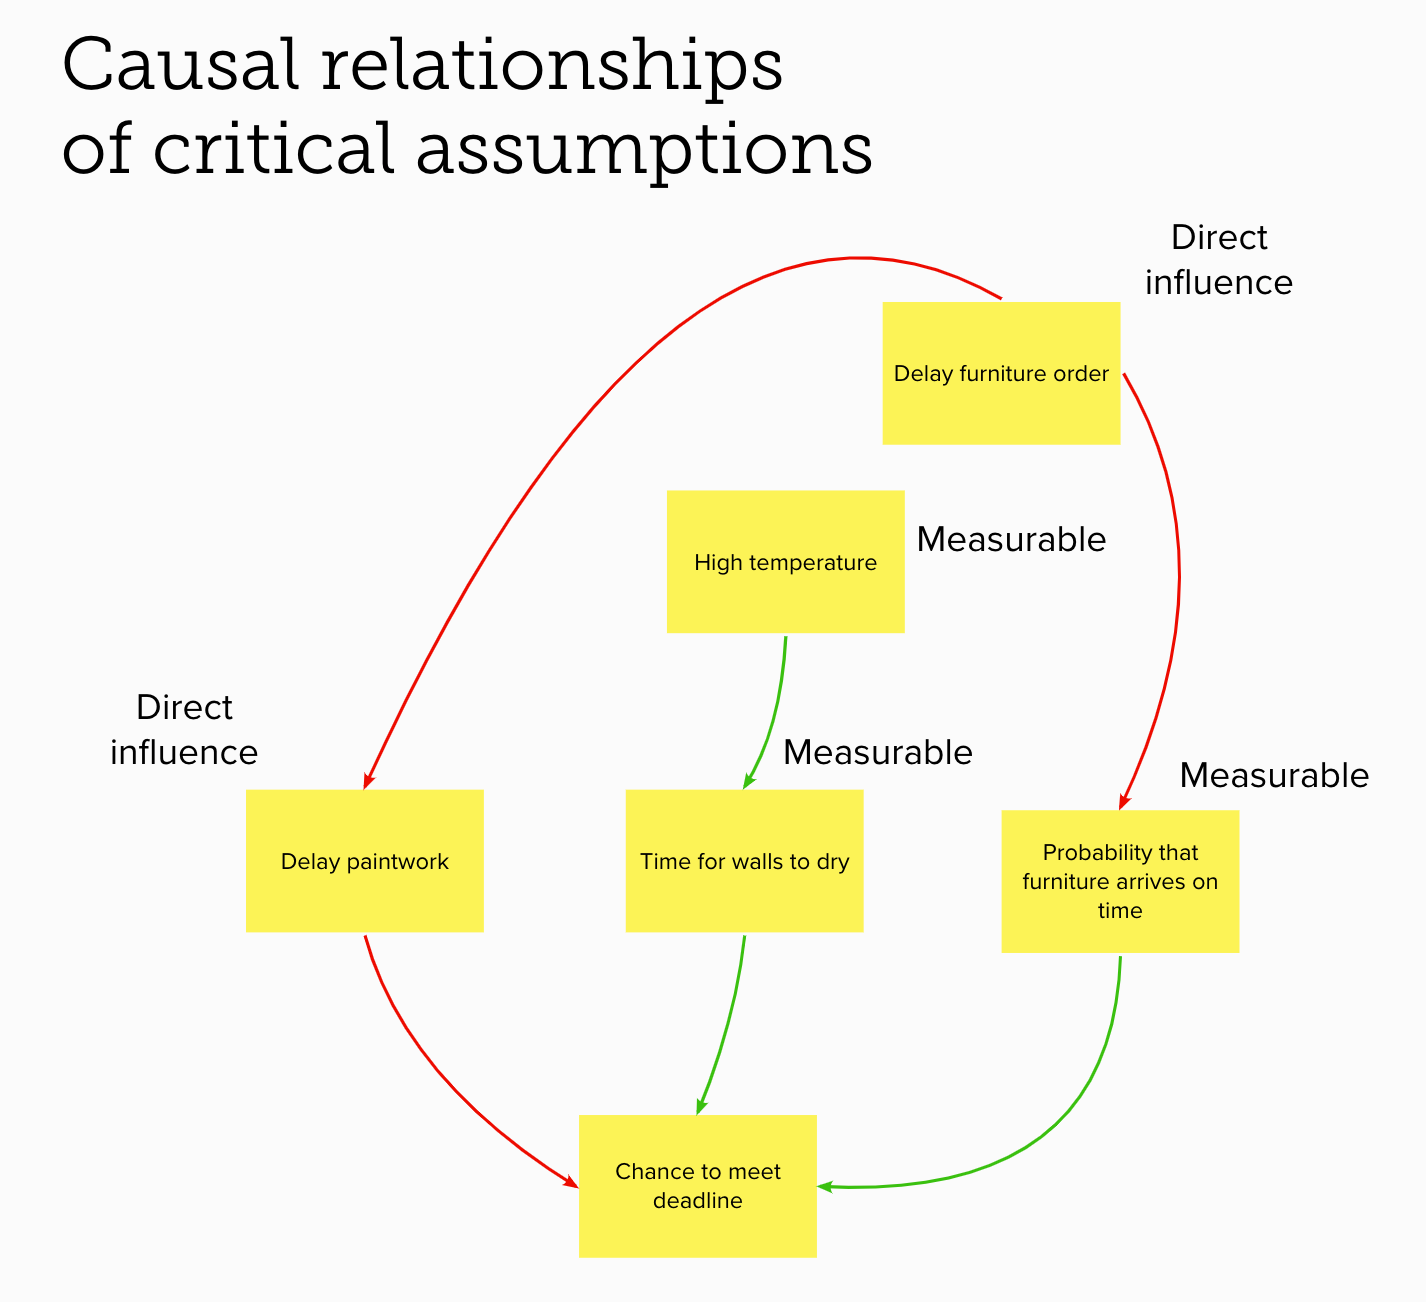 Causal relationships between assumptions